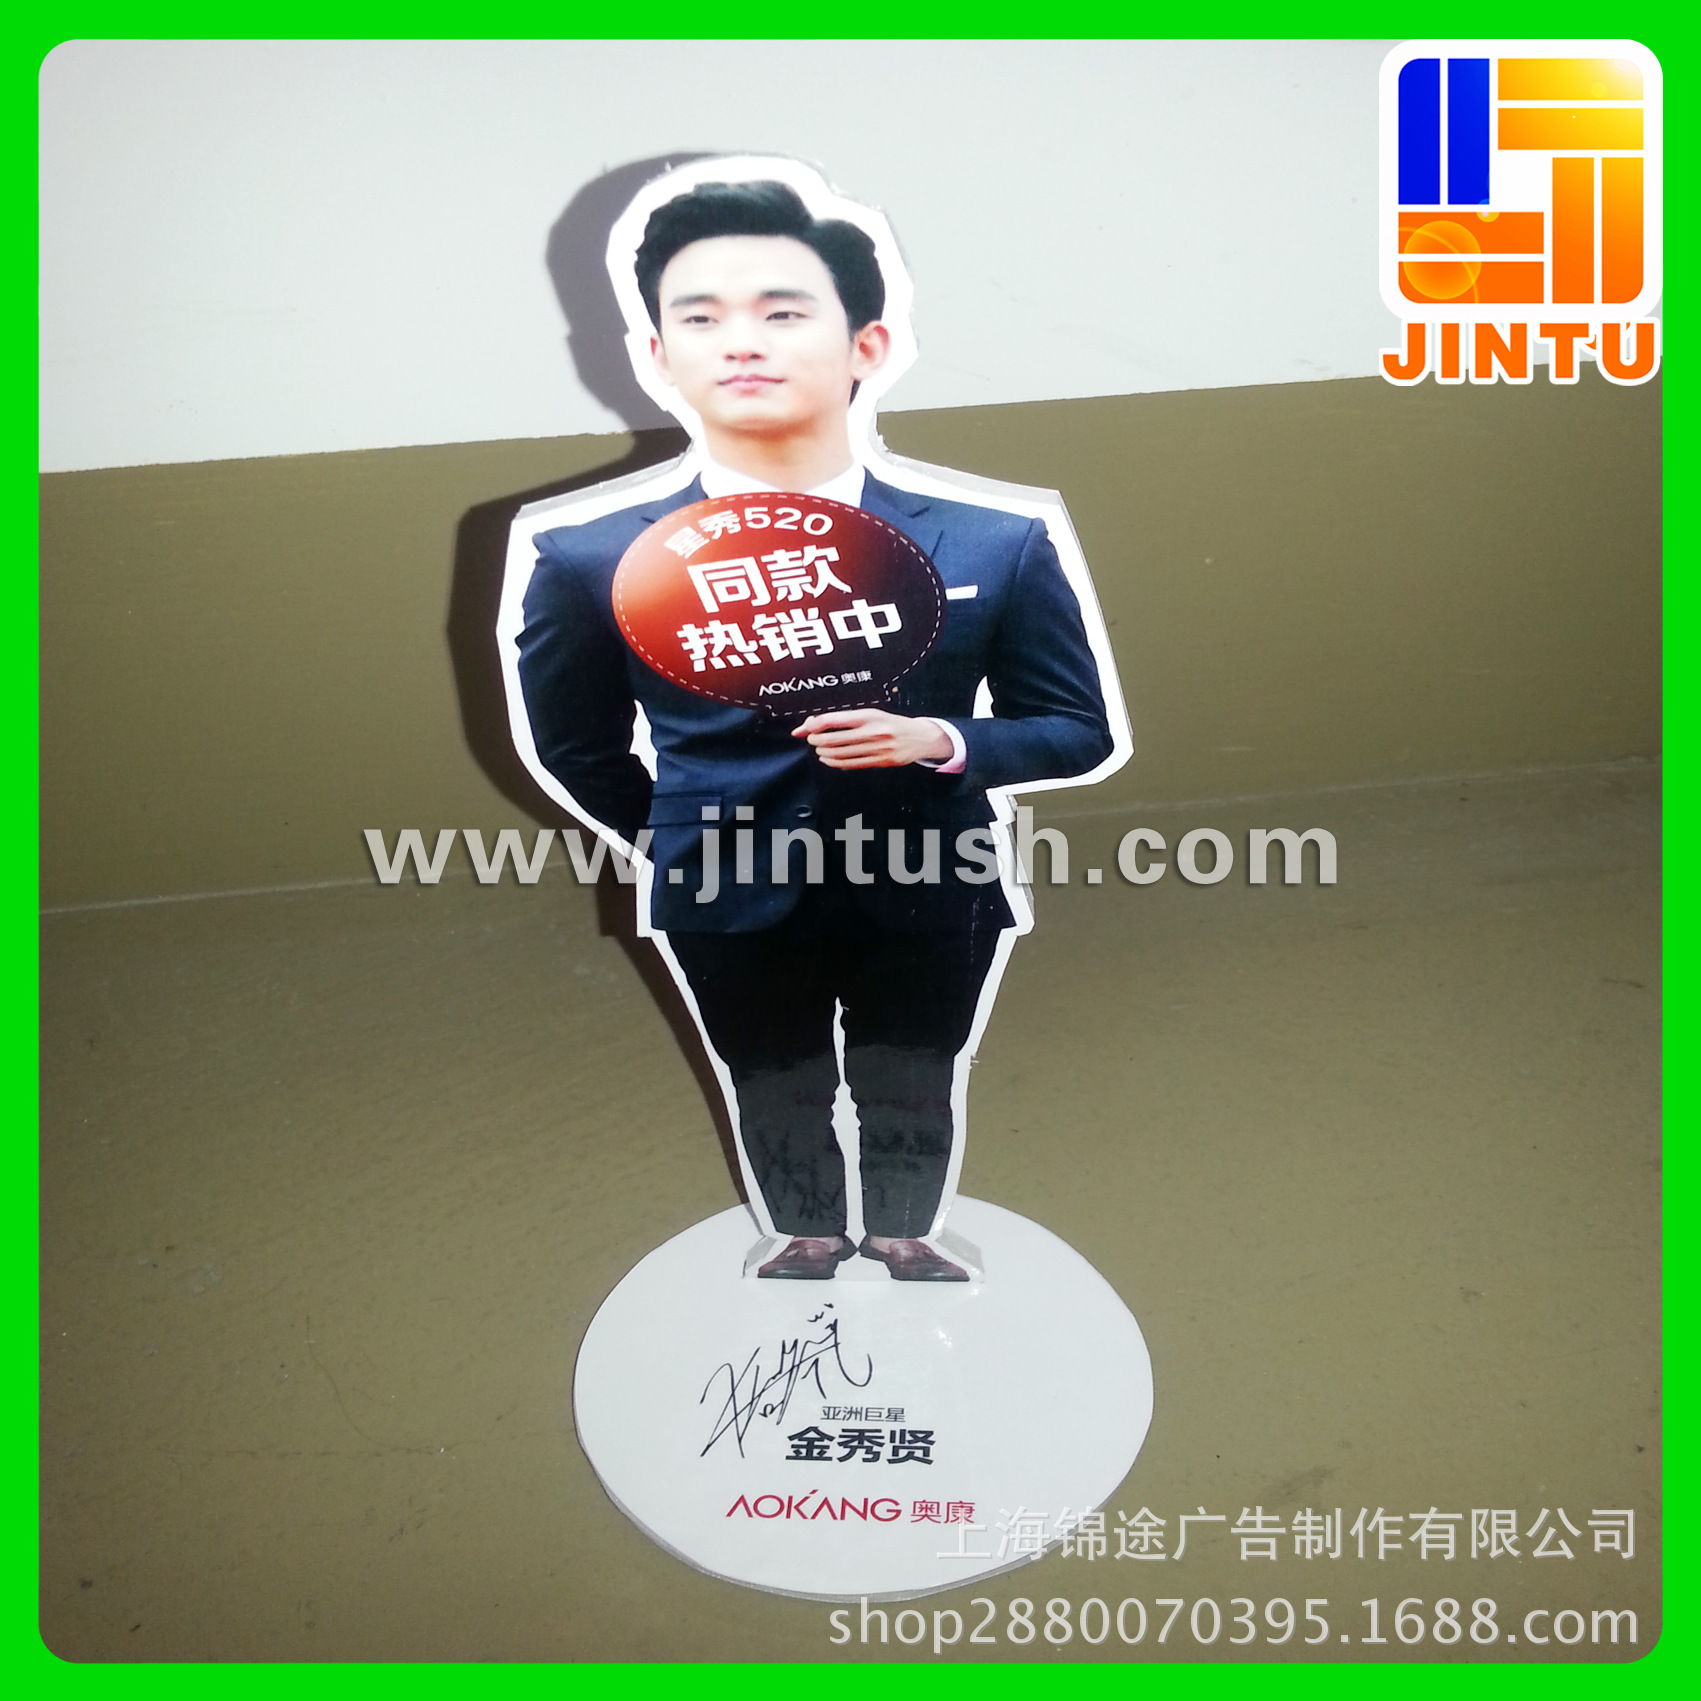 上海加工定制广告立牌 桌面立牌 人形立牌价格 中国供应商移动版